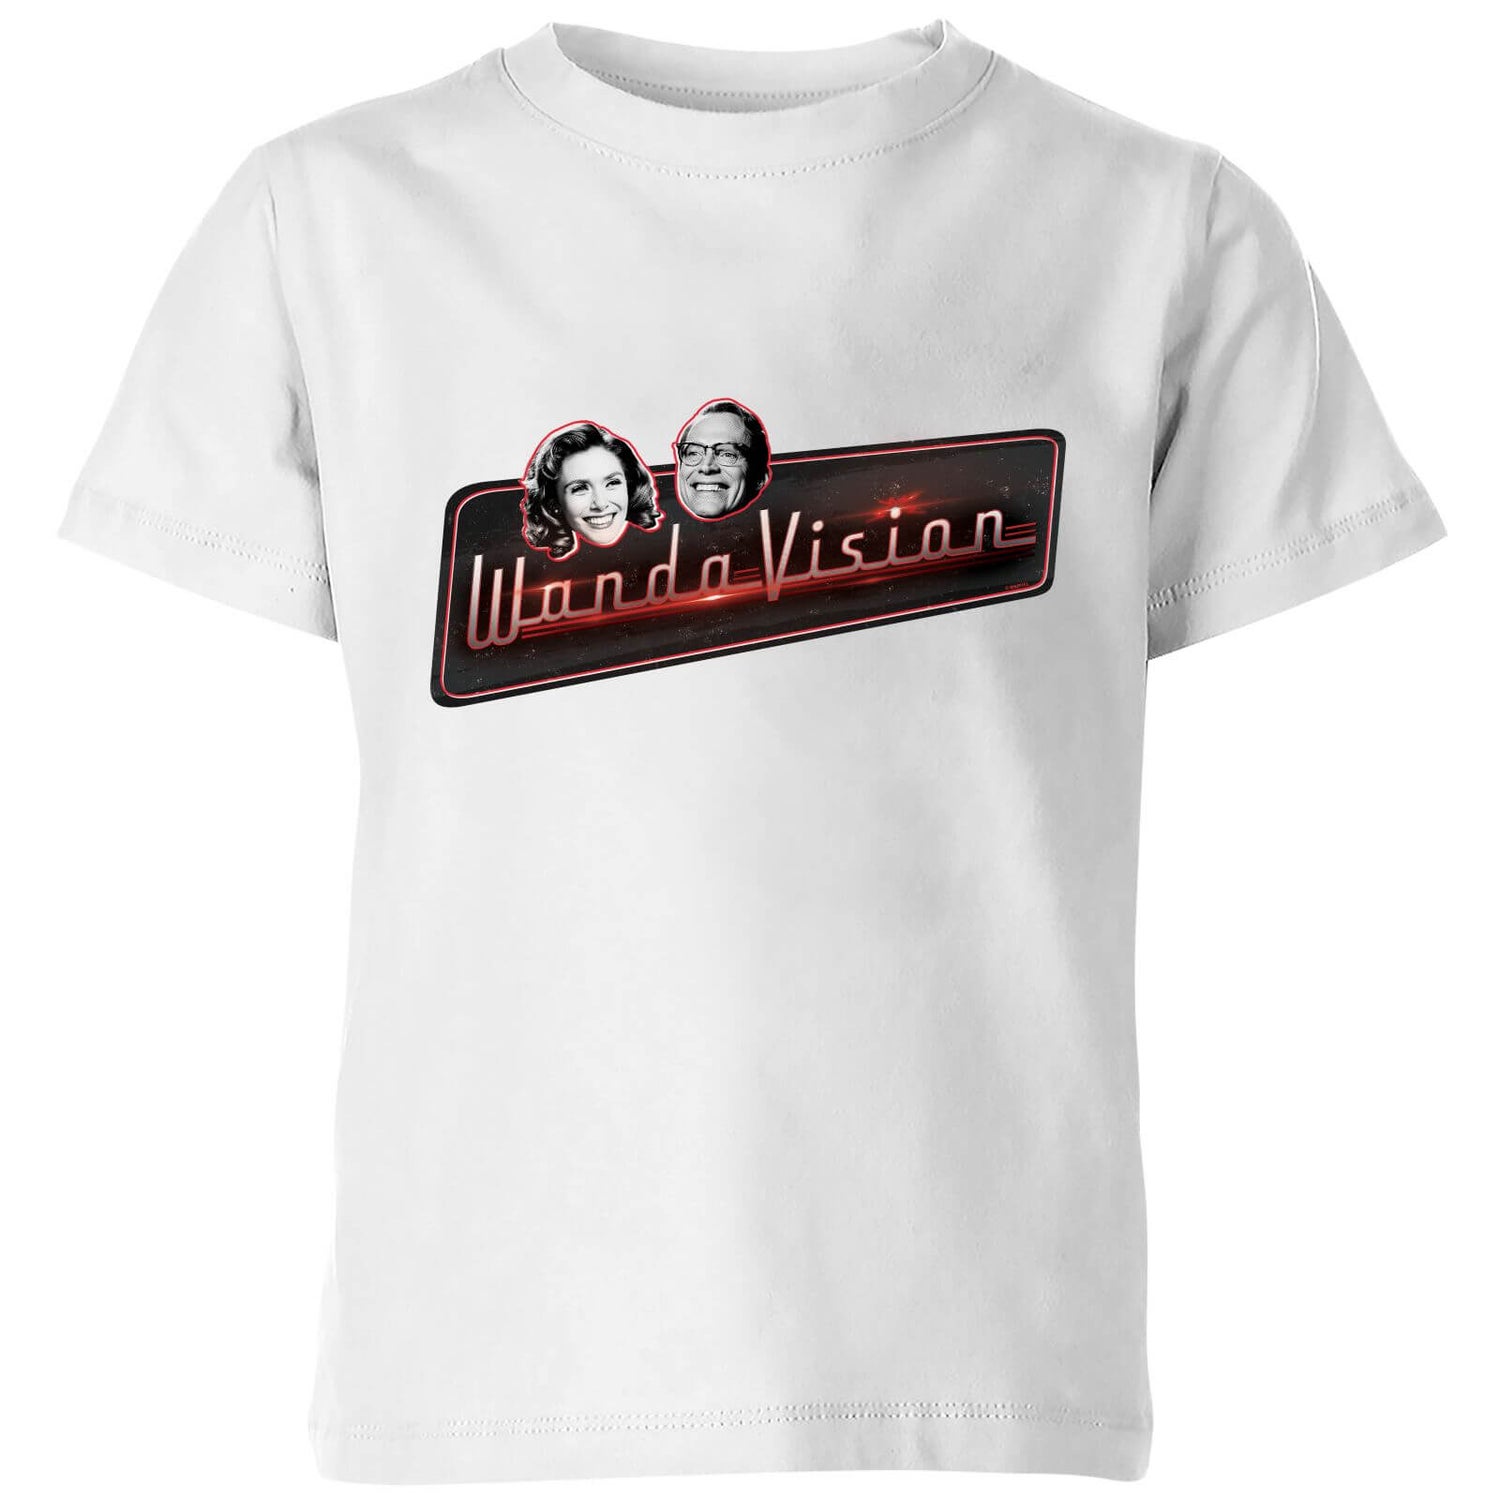 WandaVision Kids' T-Shirt - White